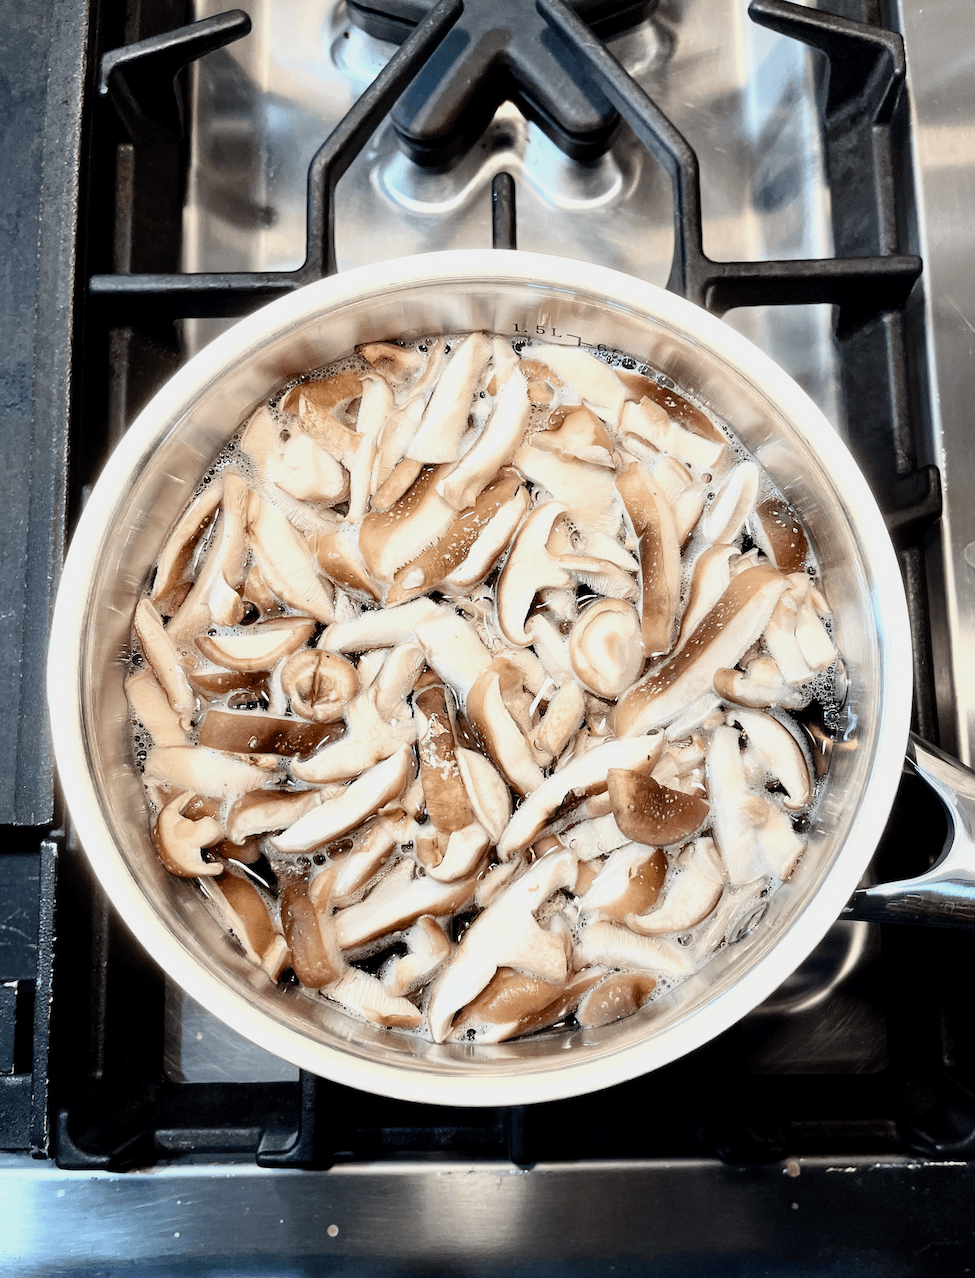 Pan of sliced mushrooms in water on stovetop